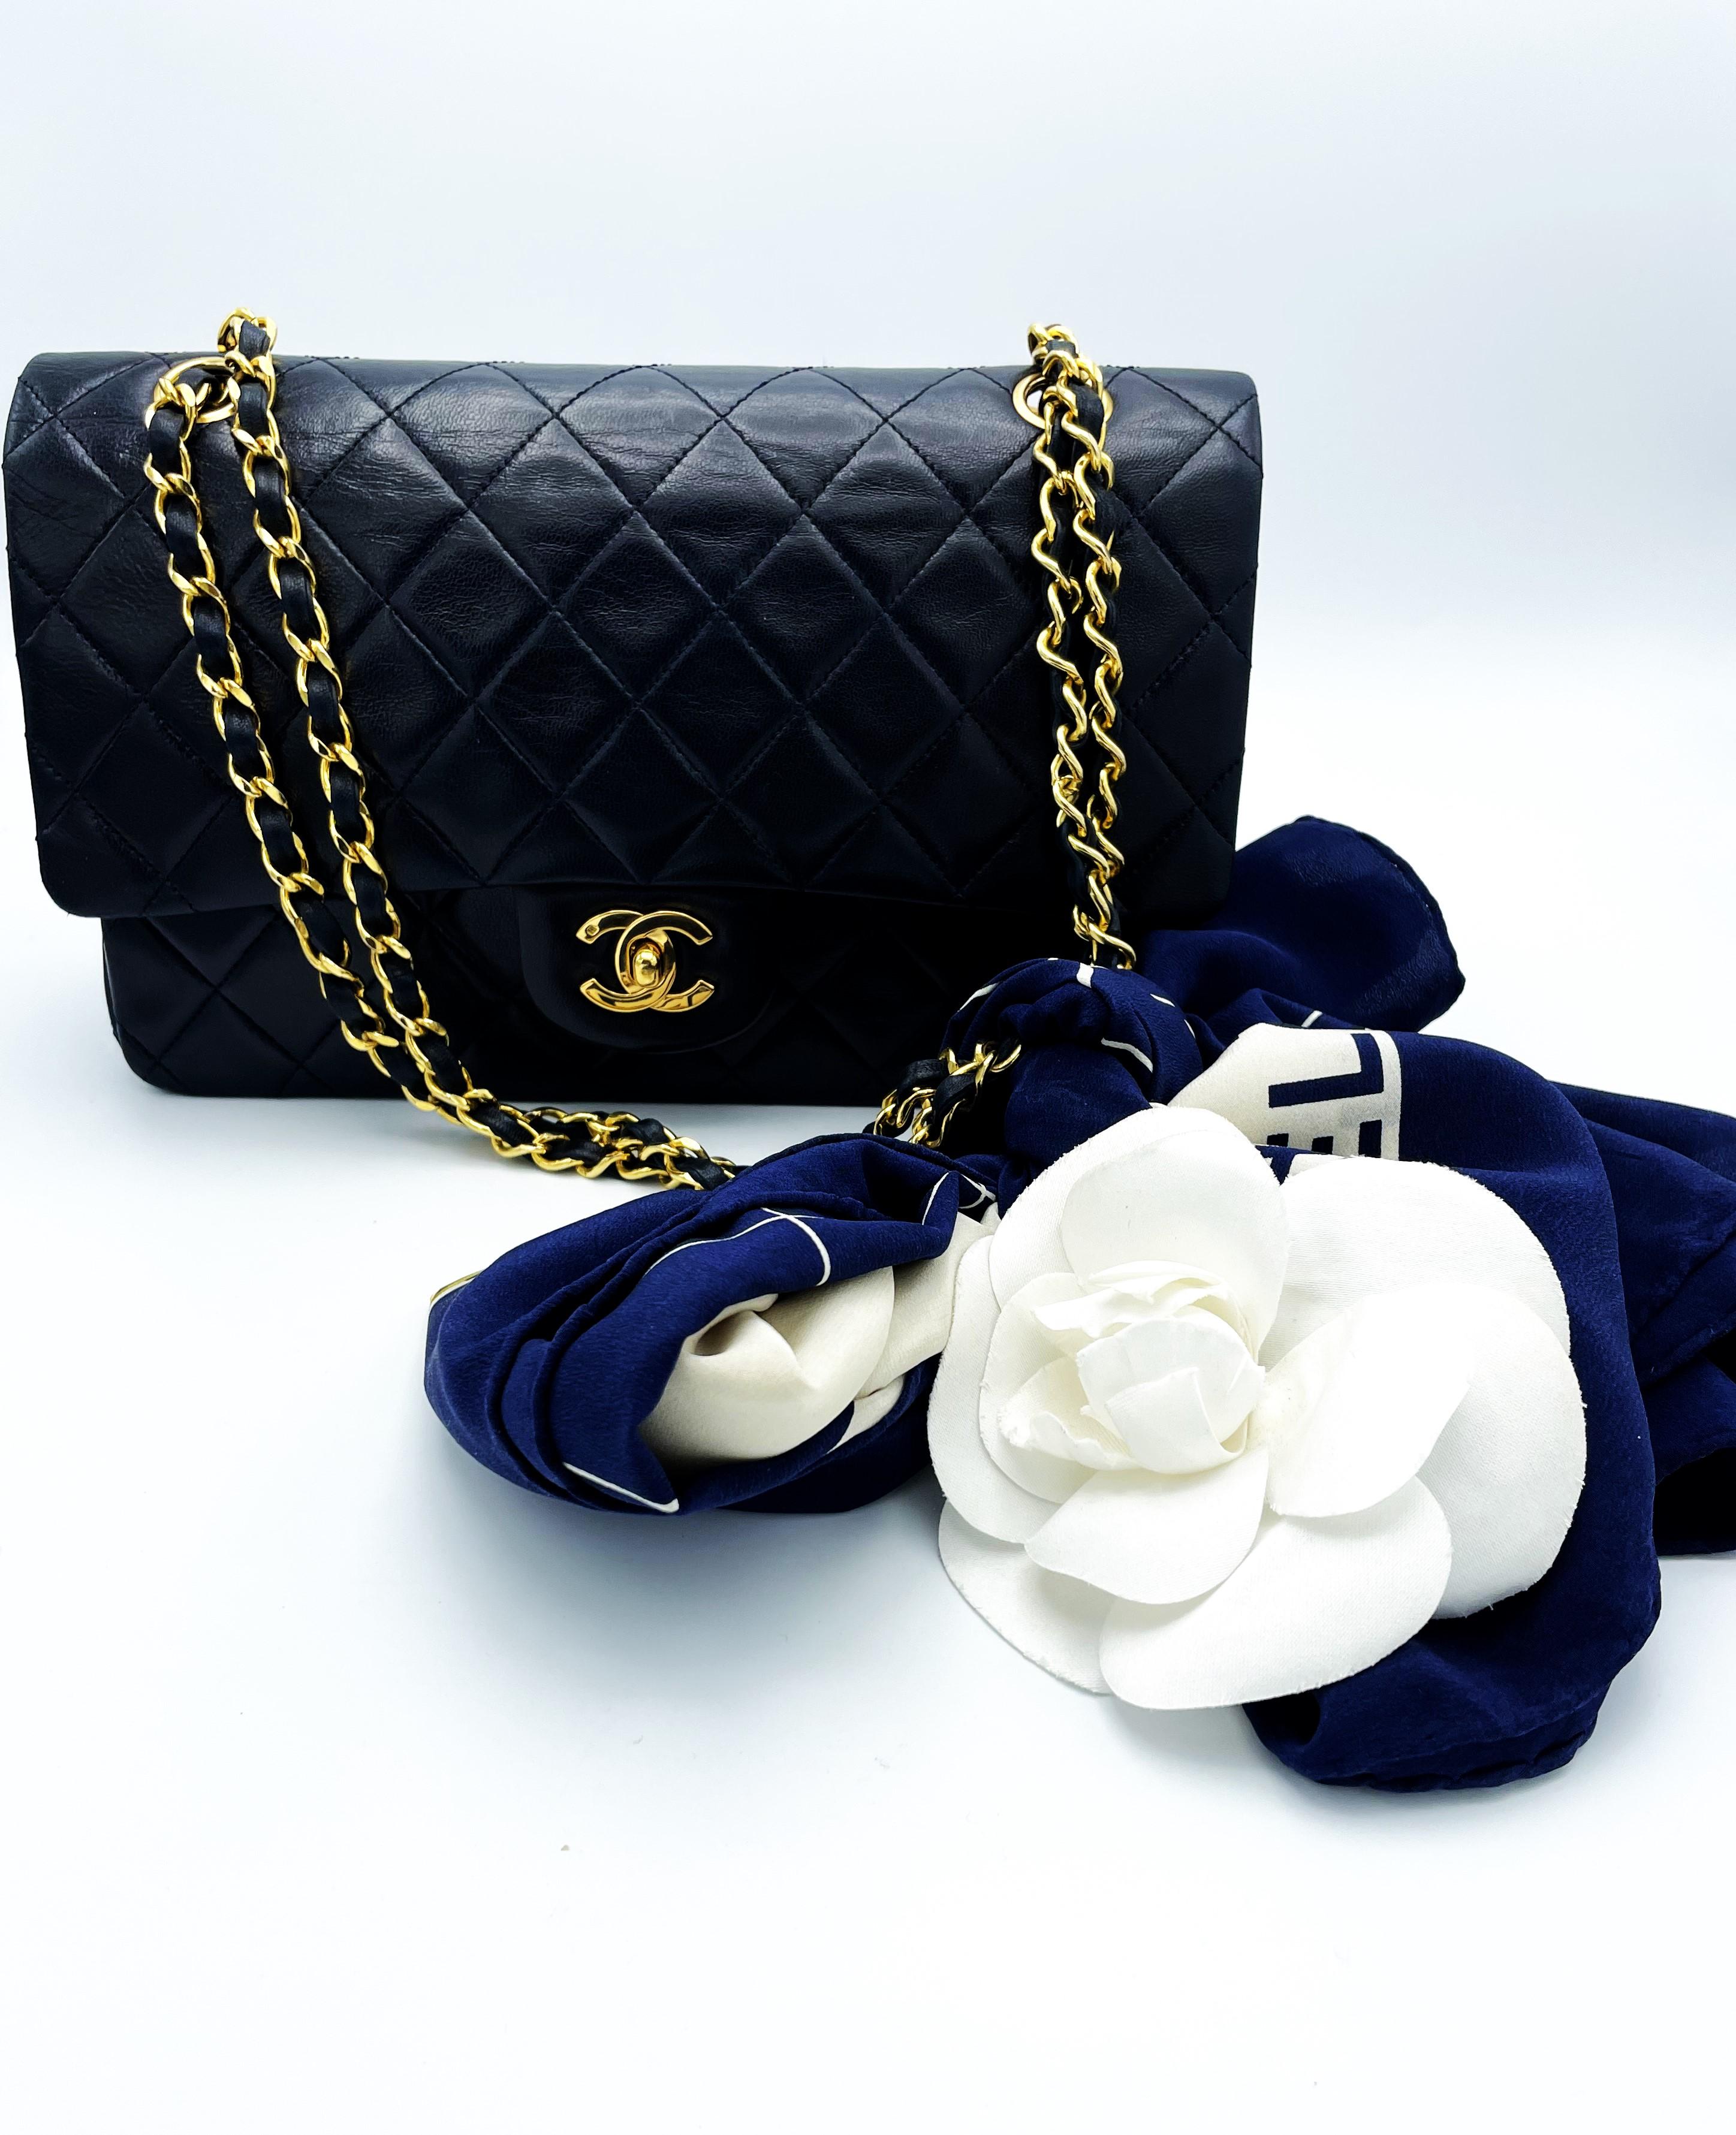 Coco Chanel a conçu ce modèle de sac en février 1955. C'est ainsi que le nom du modèle de ce sac est devenu le 